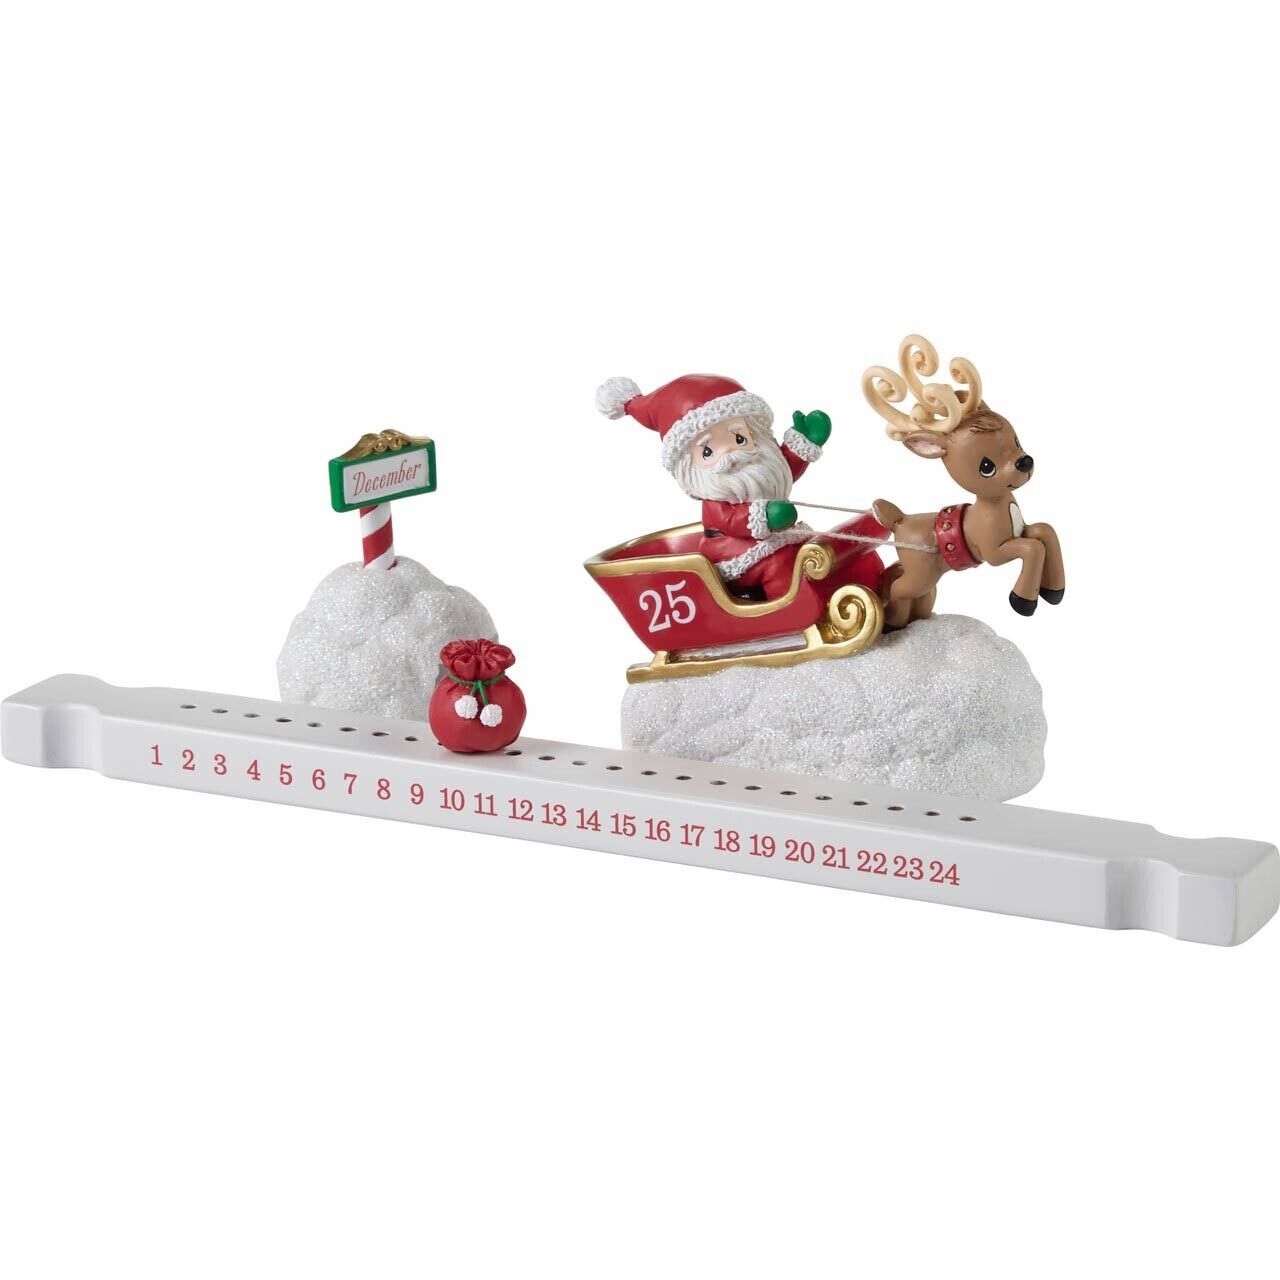 Precious Moments Christmas Figurine Countdown Calendar Here Comes Santa Claus